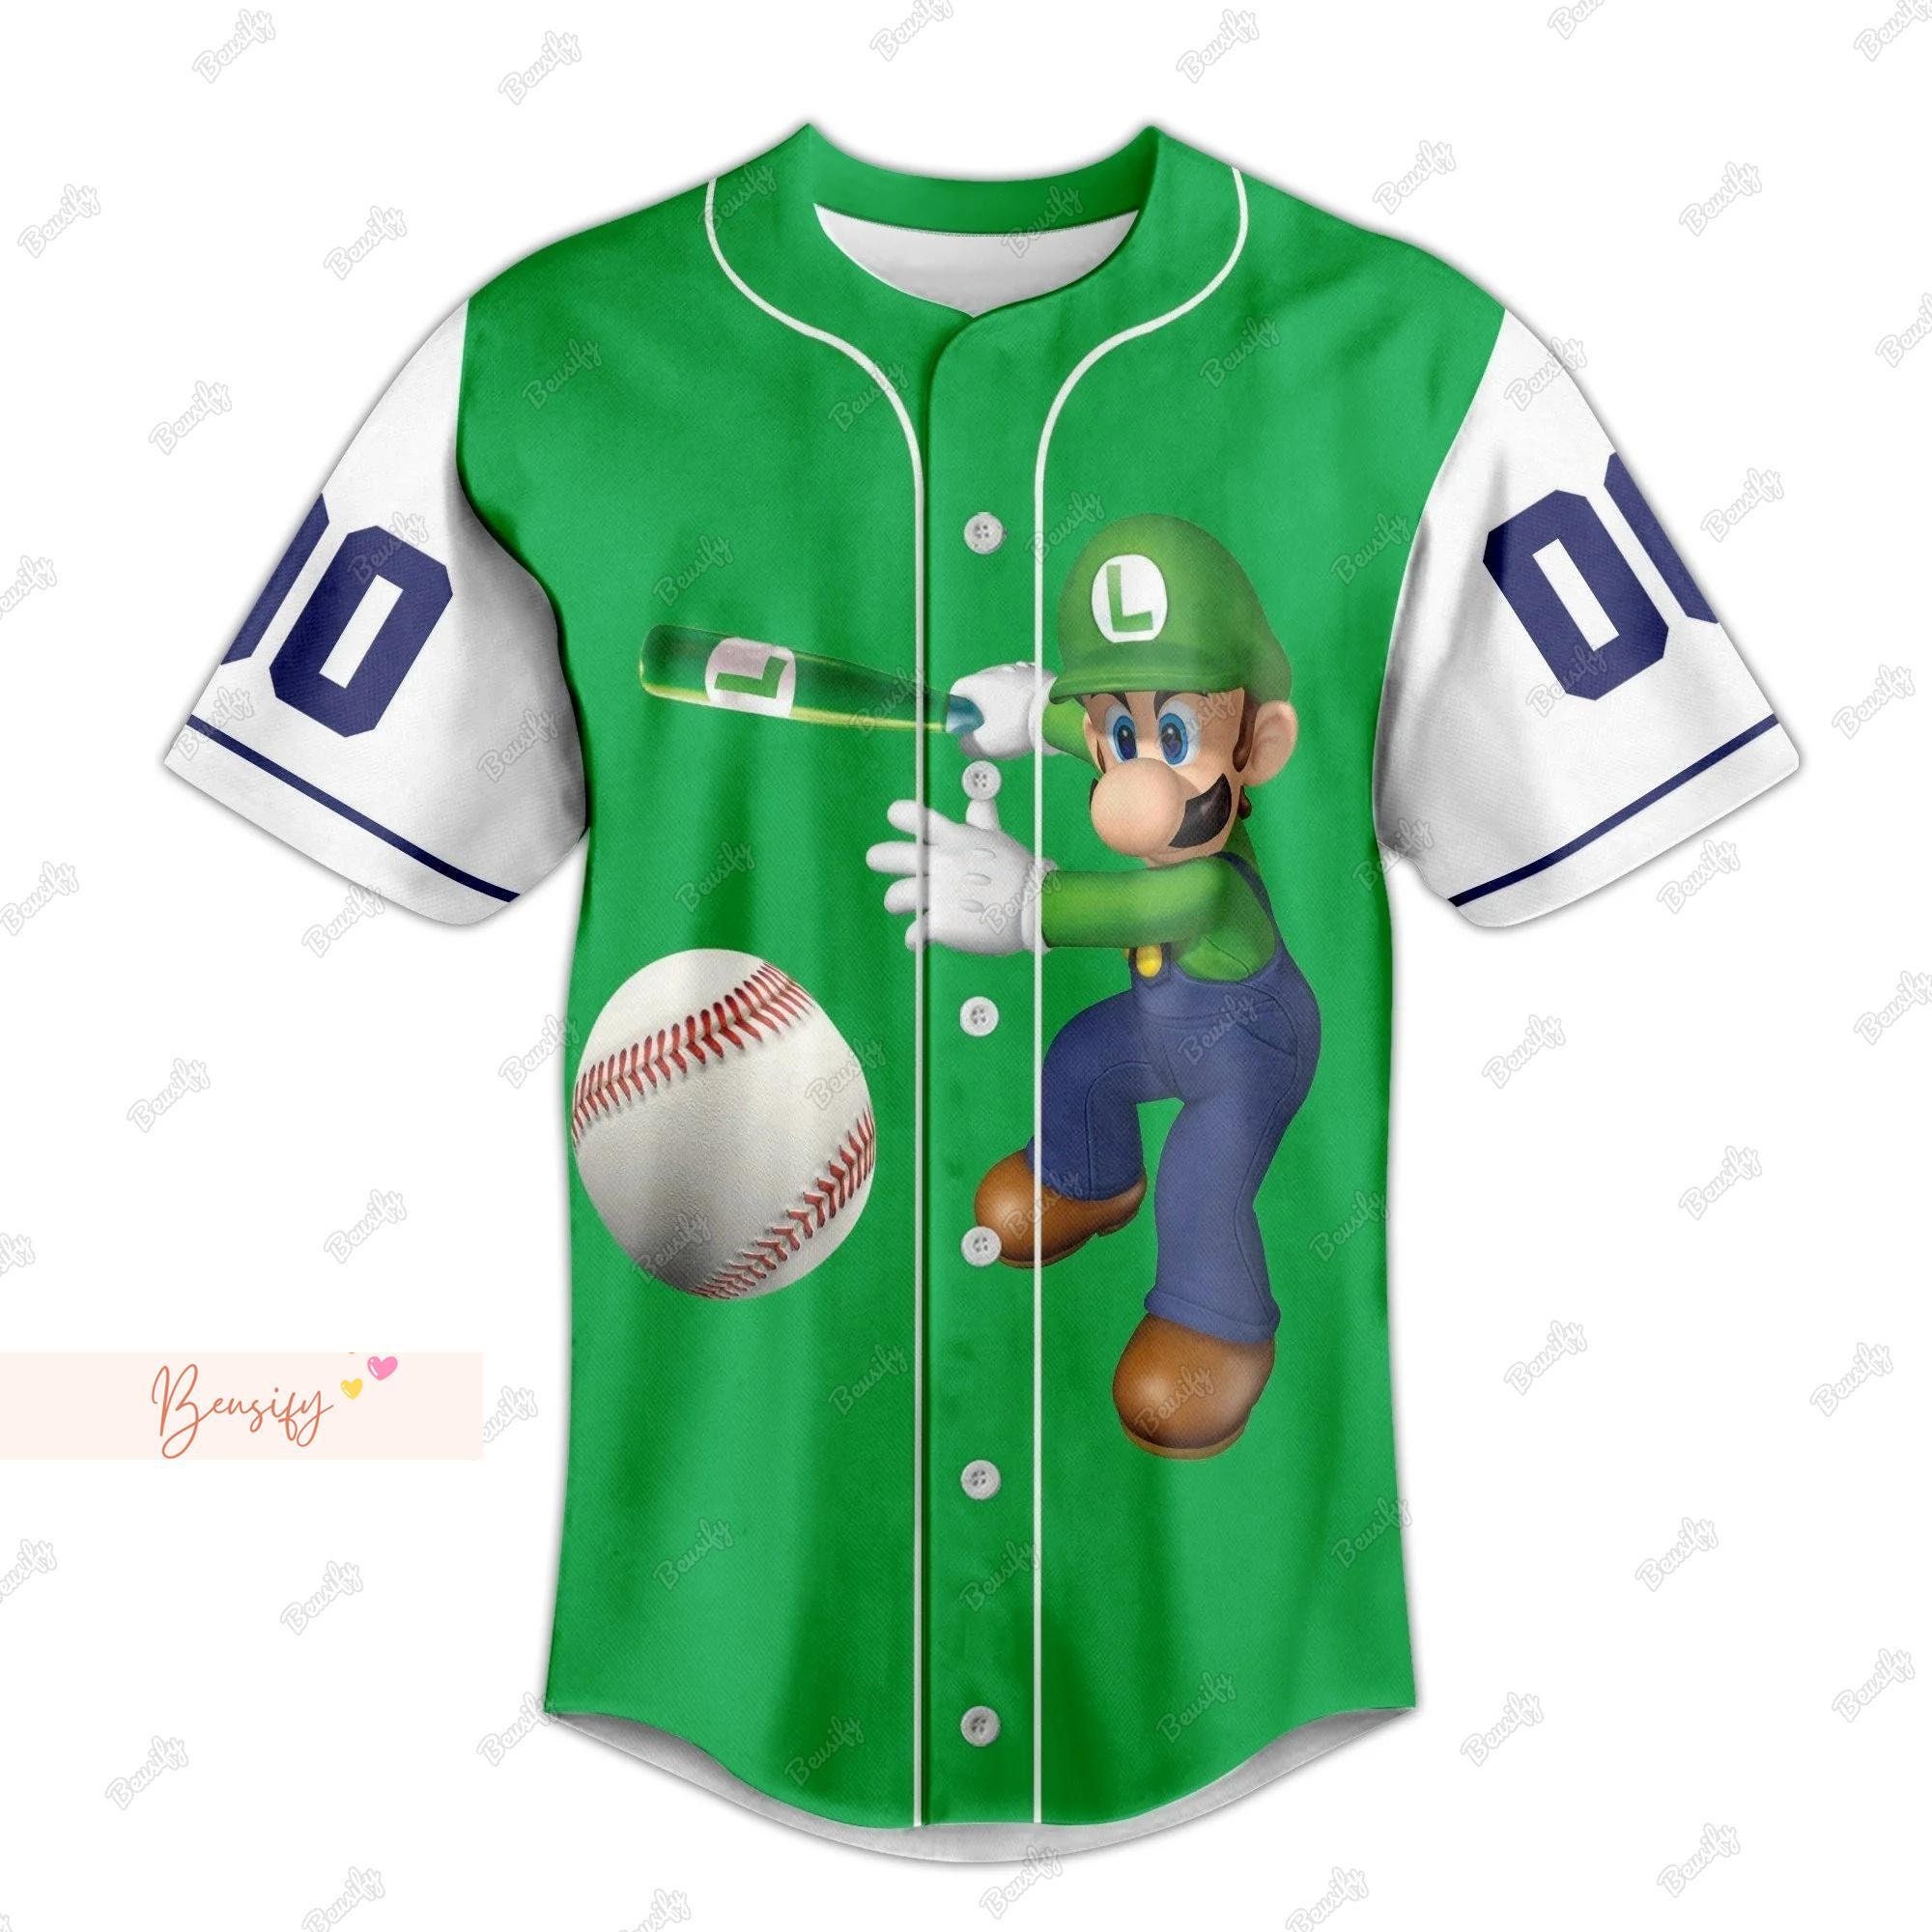 Luigi Jersey Shirt, Personalized Baseball Shirt, Super Mario Baseball Jersey